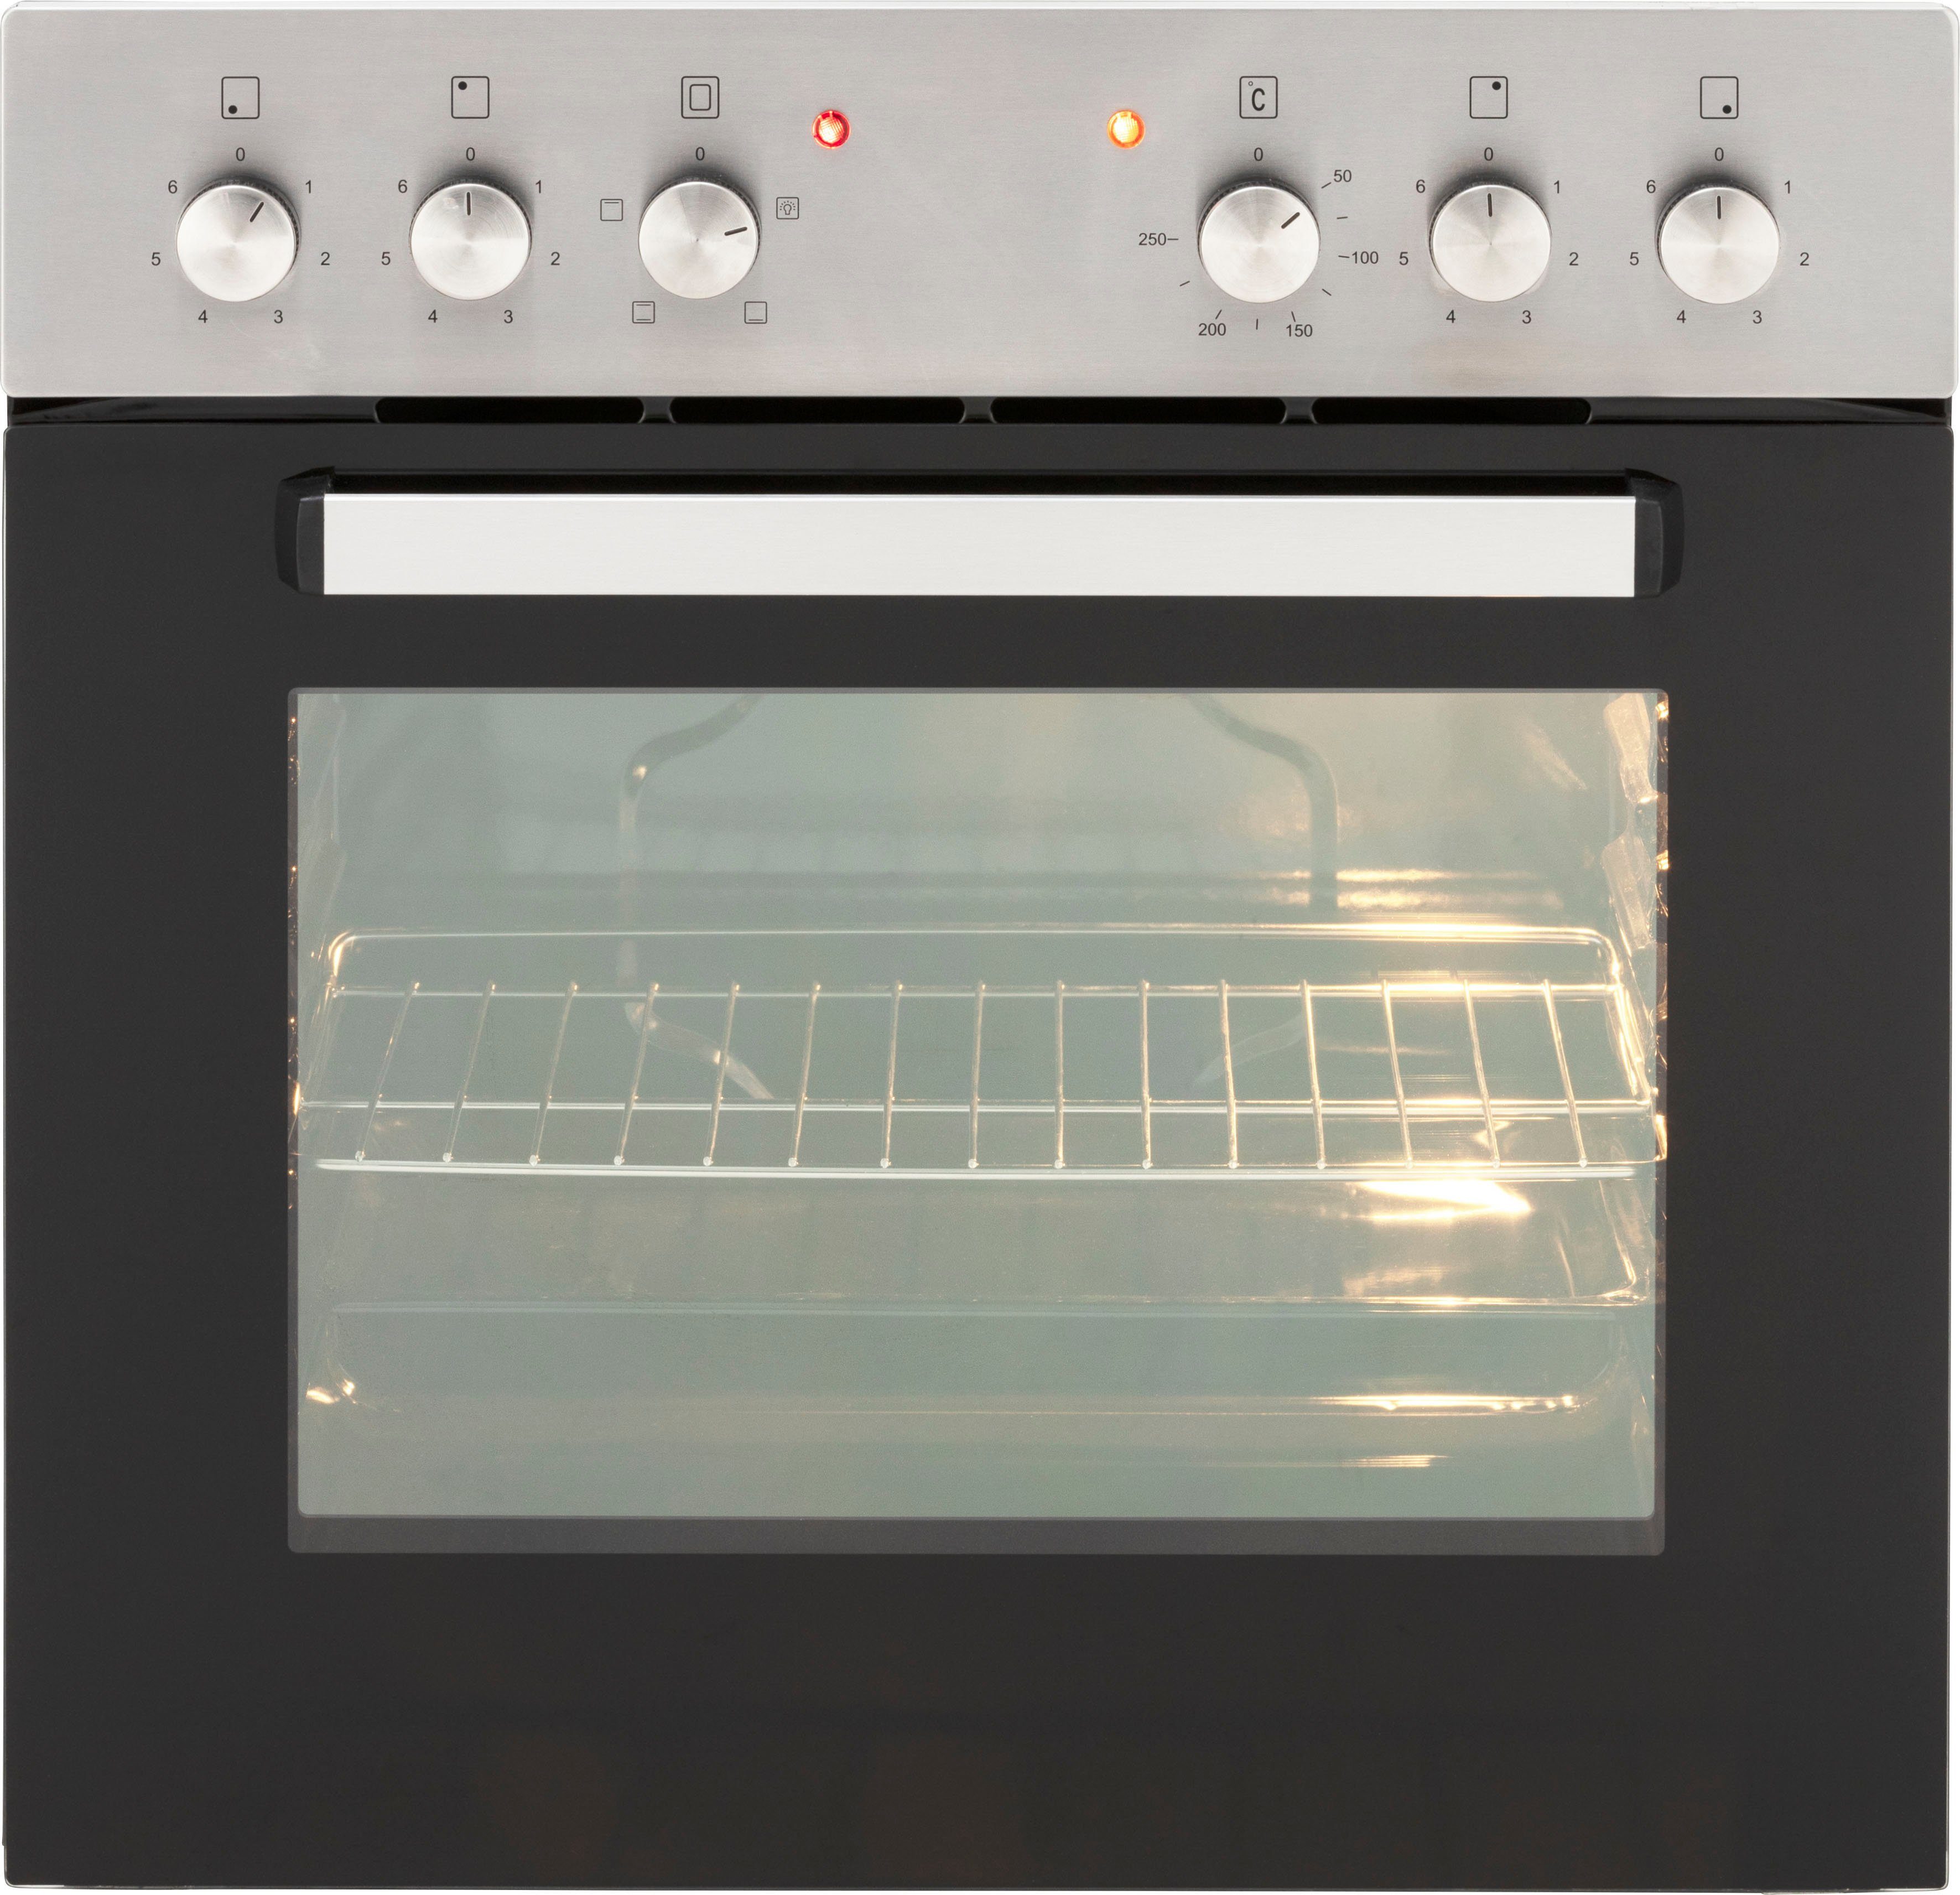 Küchenzeile HELD 280 mit Hochglanz/wotaneichefarbe wotaneichefarben | E-Geräten, Breite MÖBEL Brindisi, weiß cm